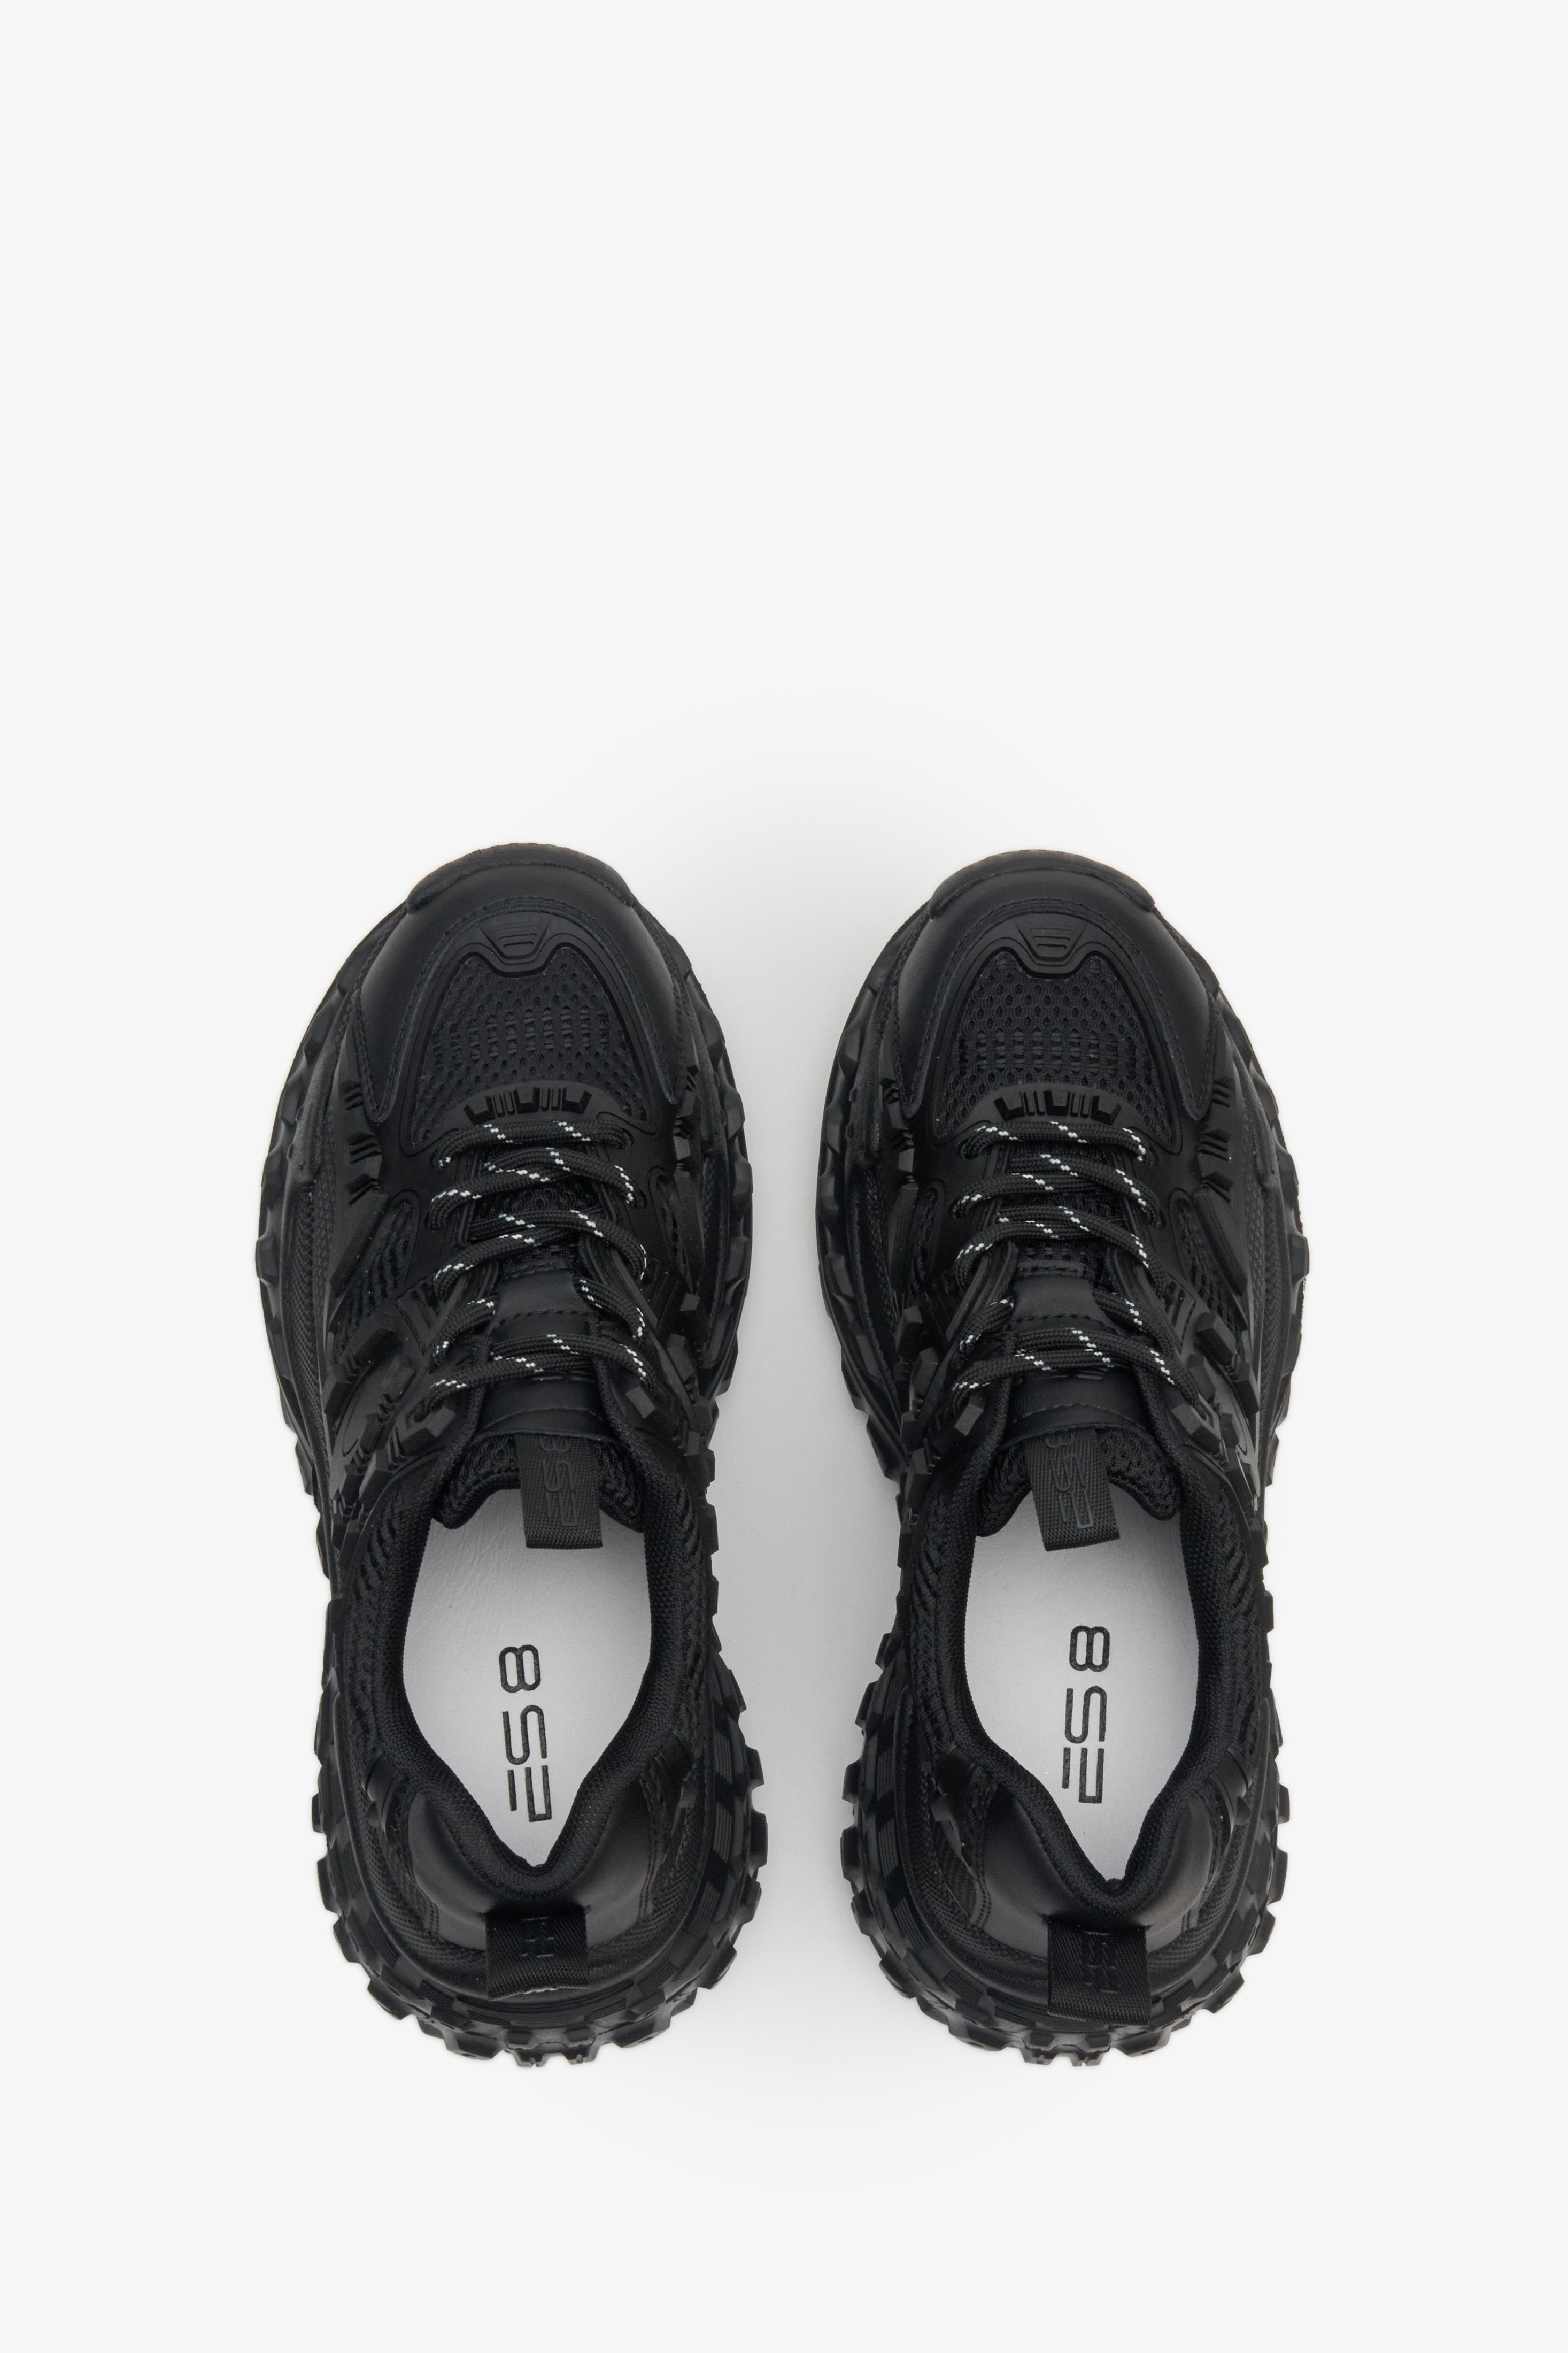 Sneakersy damskie w kolorze czarnym ze sznurowaniem ze skóry naturalnej - prezentacja obuwia z góry.